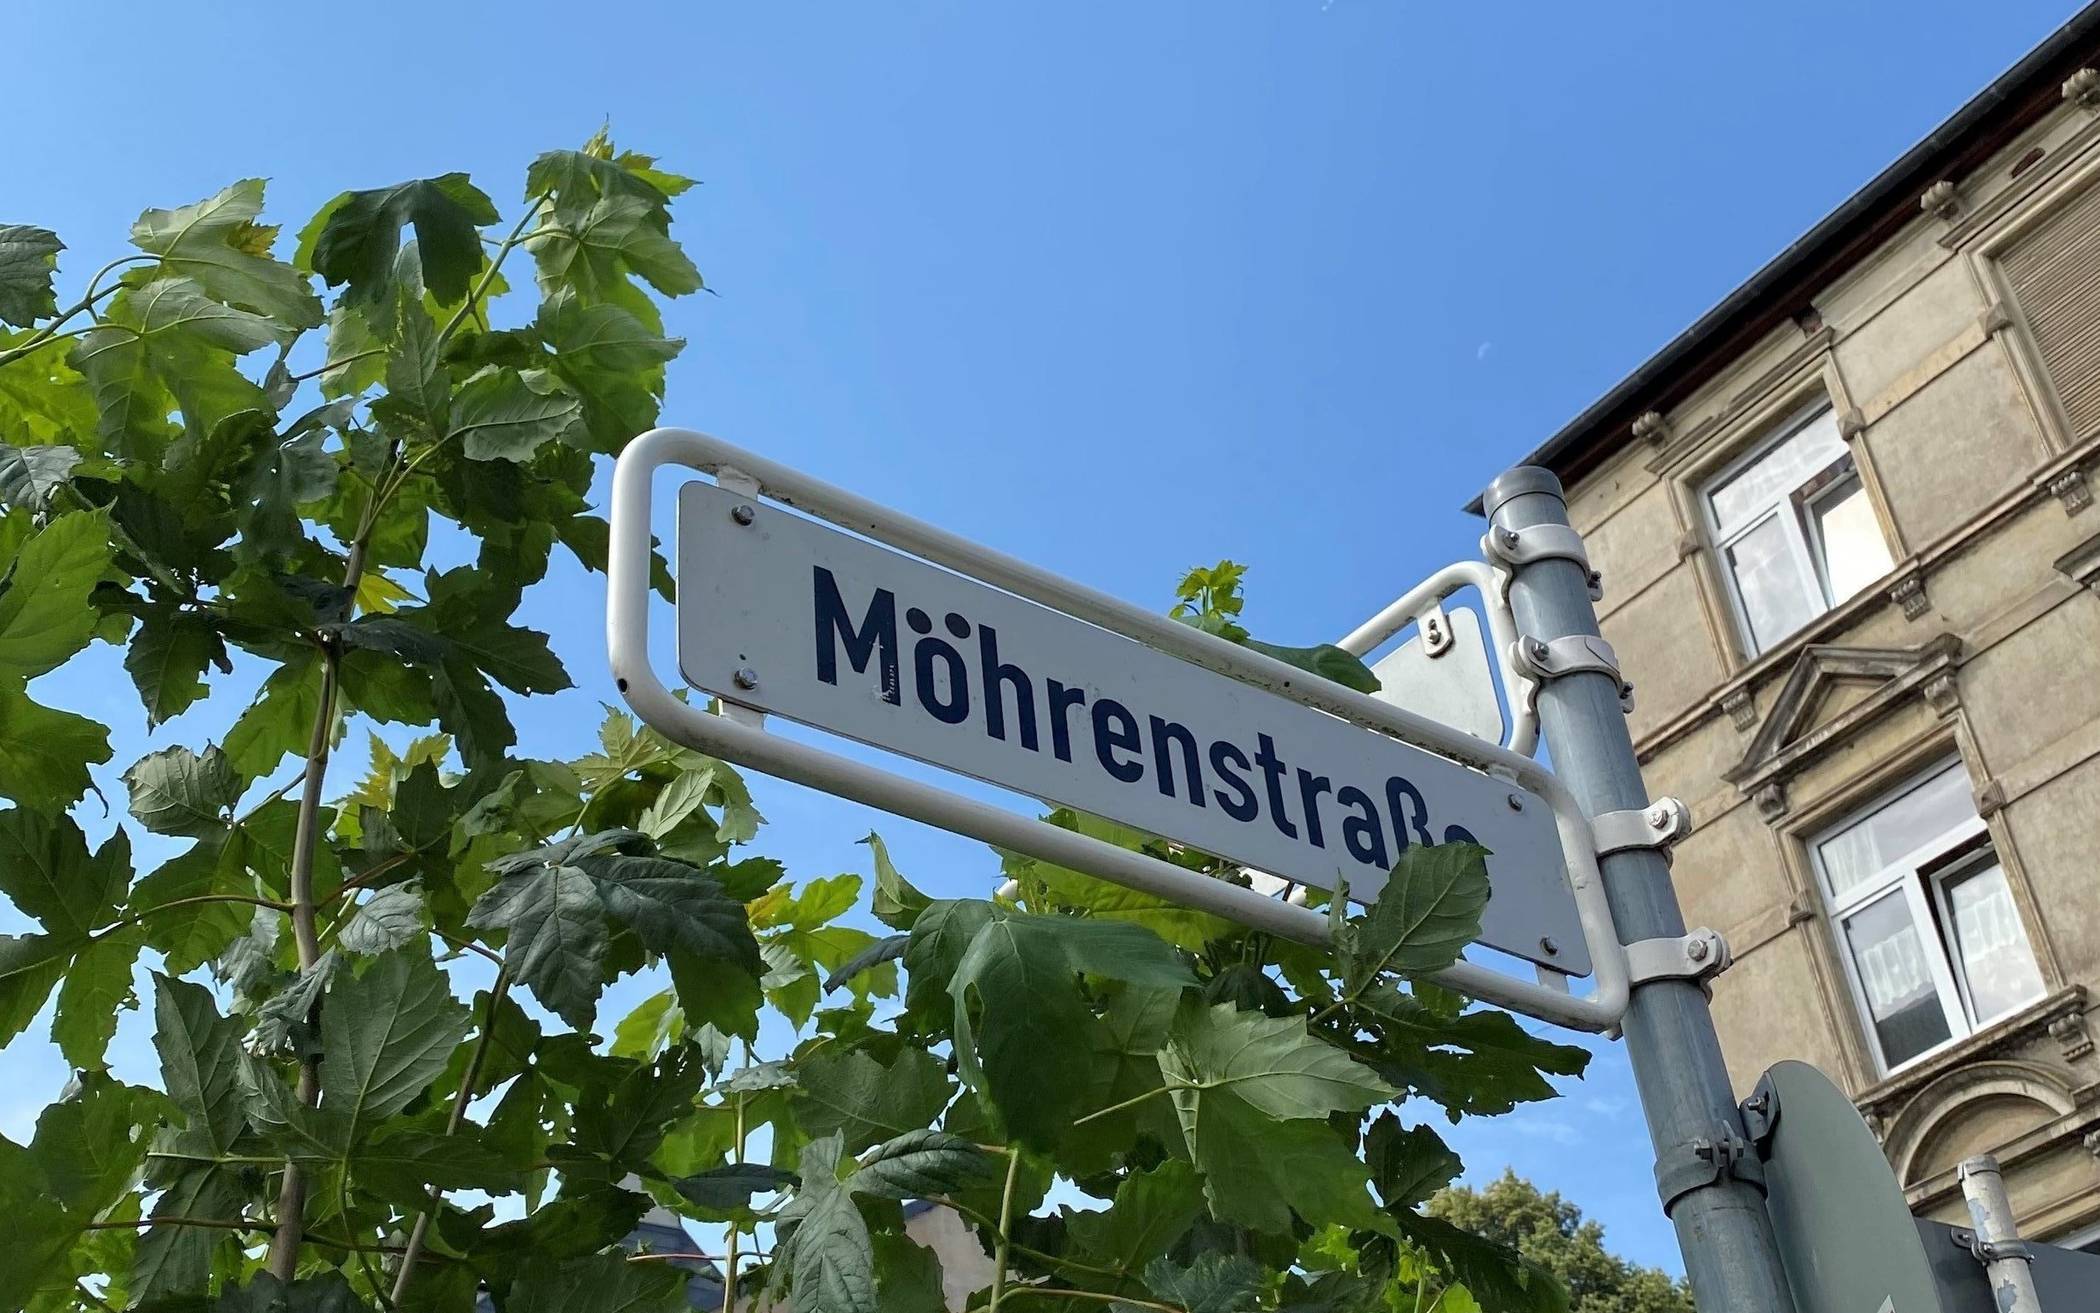  Zwei Punkte, die viel ändern: Unbekannte haben an dem Straßenschild bereits selbst Hand angelegt und aus der Mohrenstraße die Möhrenstraße gemacht. 